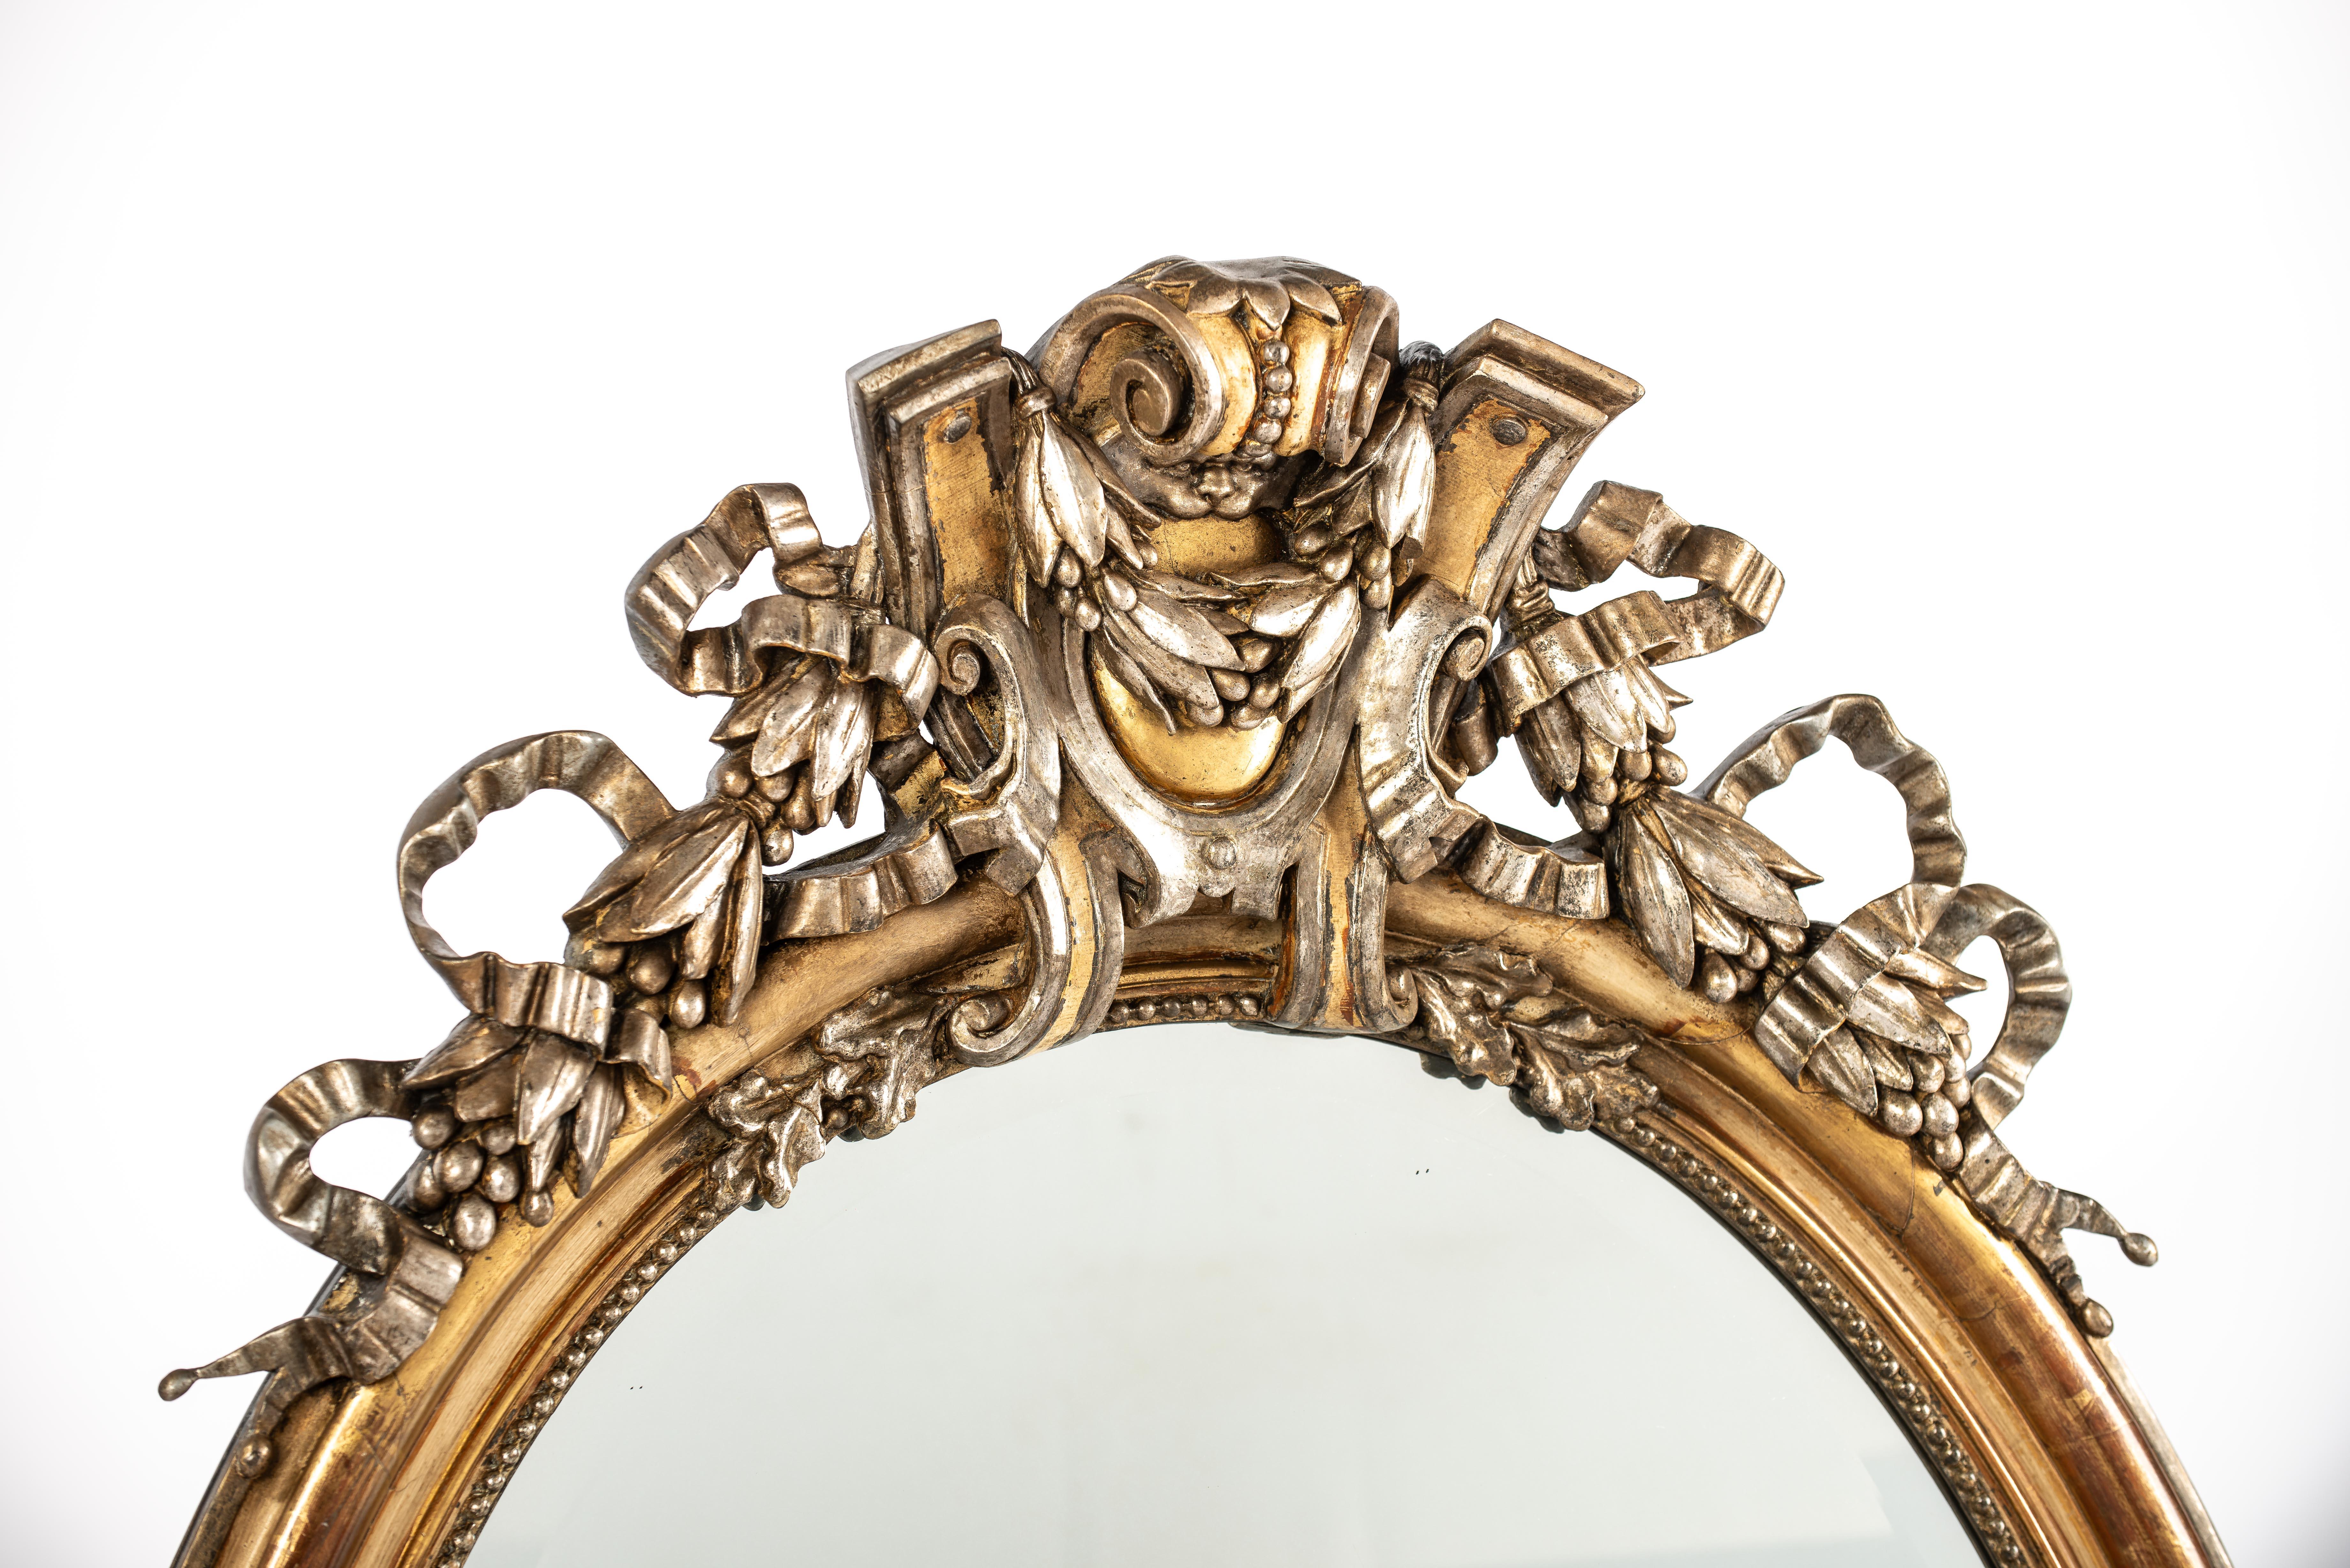 Nous vous proposons ici un grand miroir ovale ancien qui a été fabriqué en France dans la seconde moitié du XIXe siècle, vers 1860. Le miroir est décoré de magnifiques ornements à la riche signification symbolique. 
L'ornement supérieur du miroir